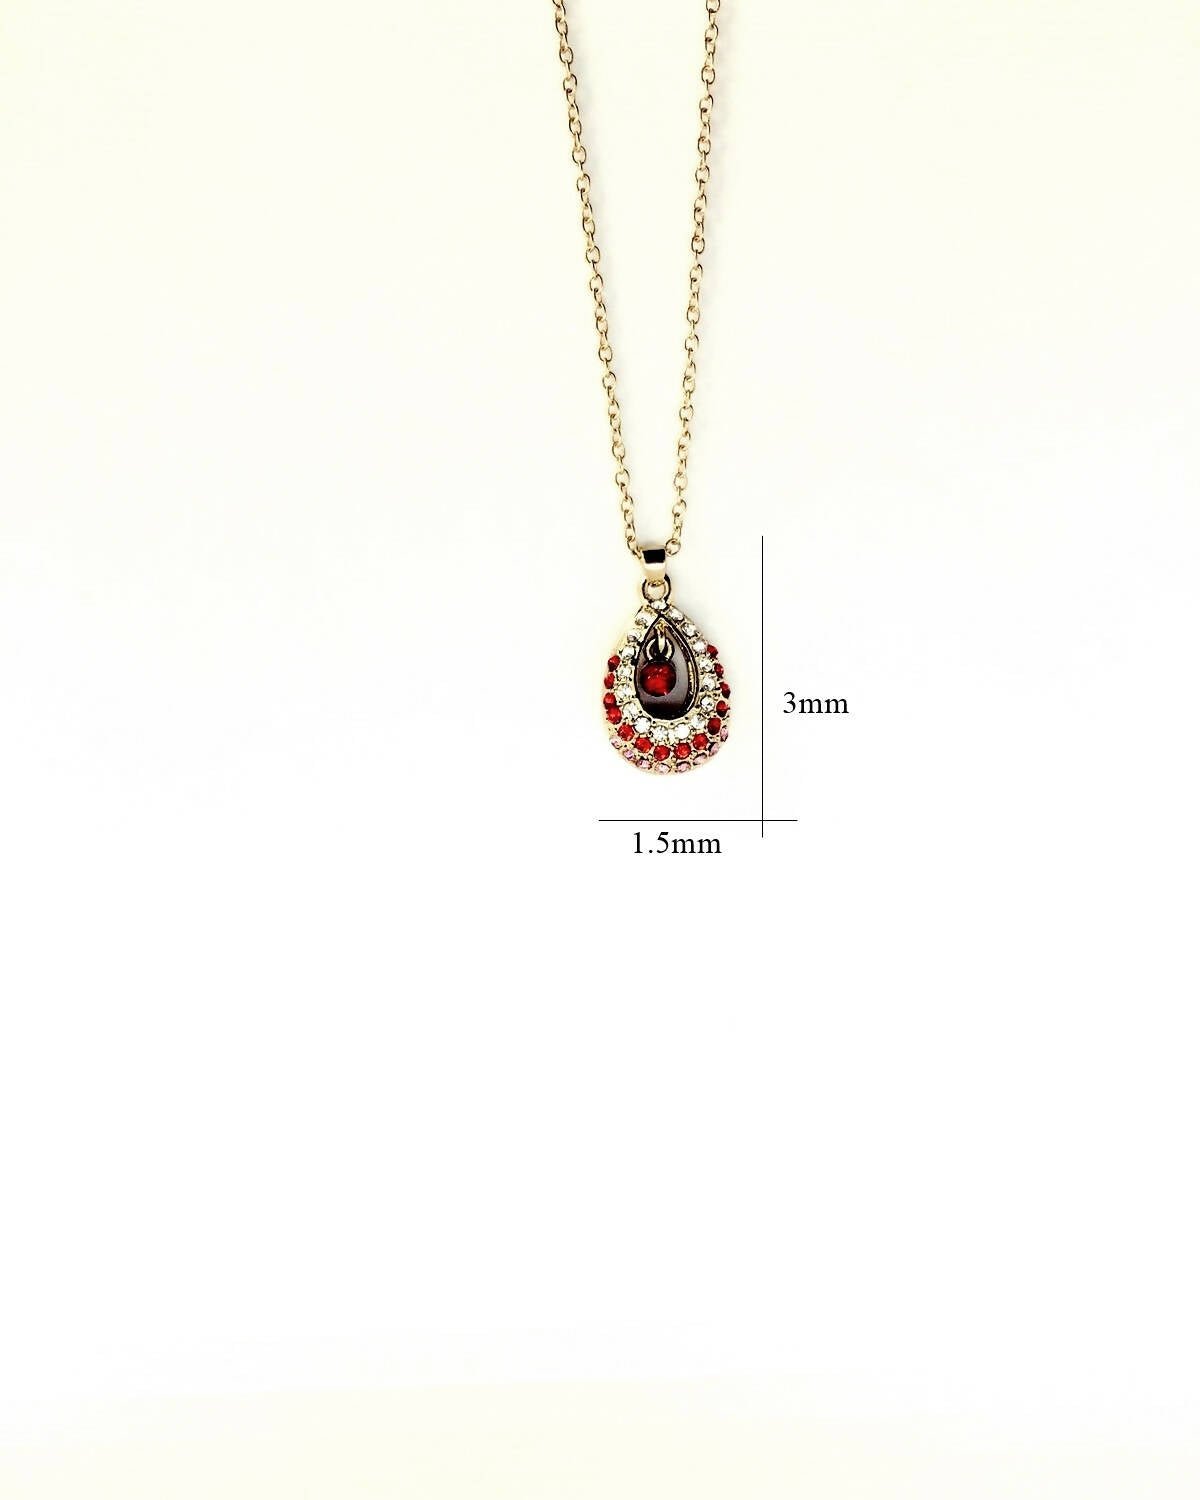 Slaks World Fashion Crystal & Pear Shape Pendant Necklace - Red - Shopzetu